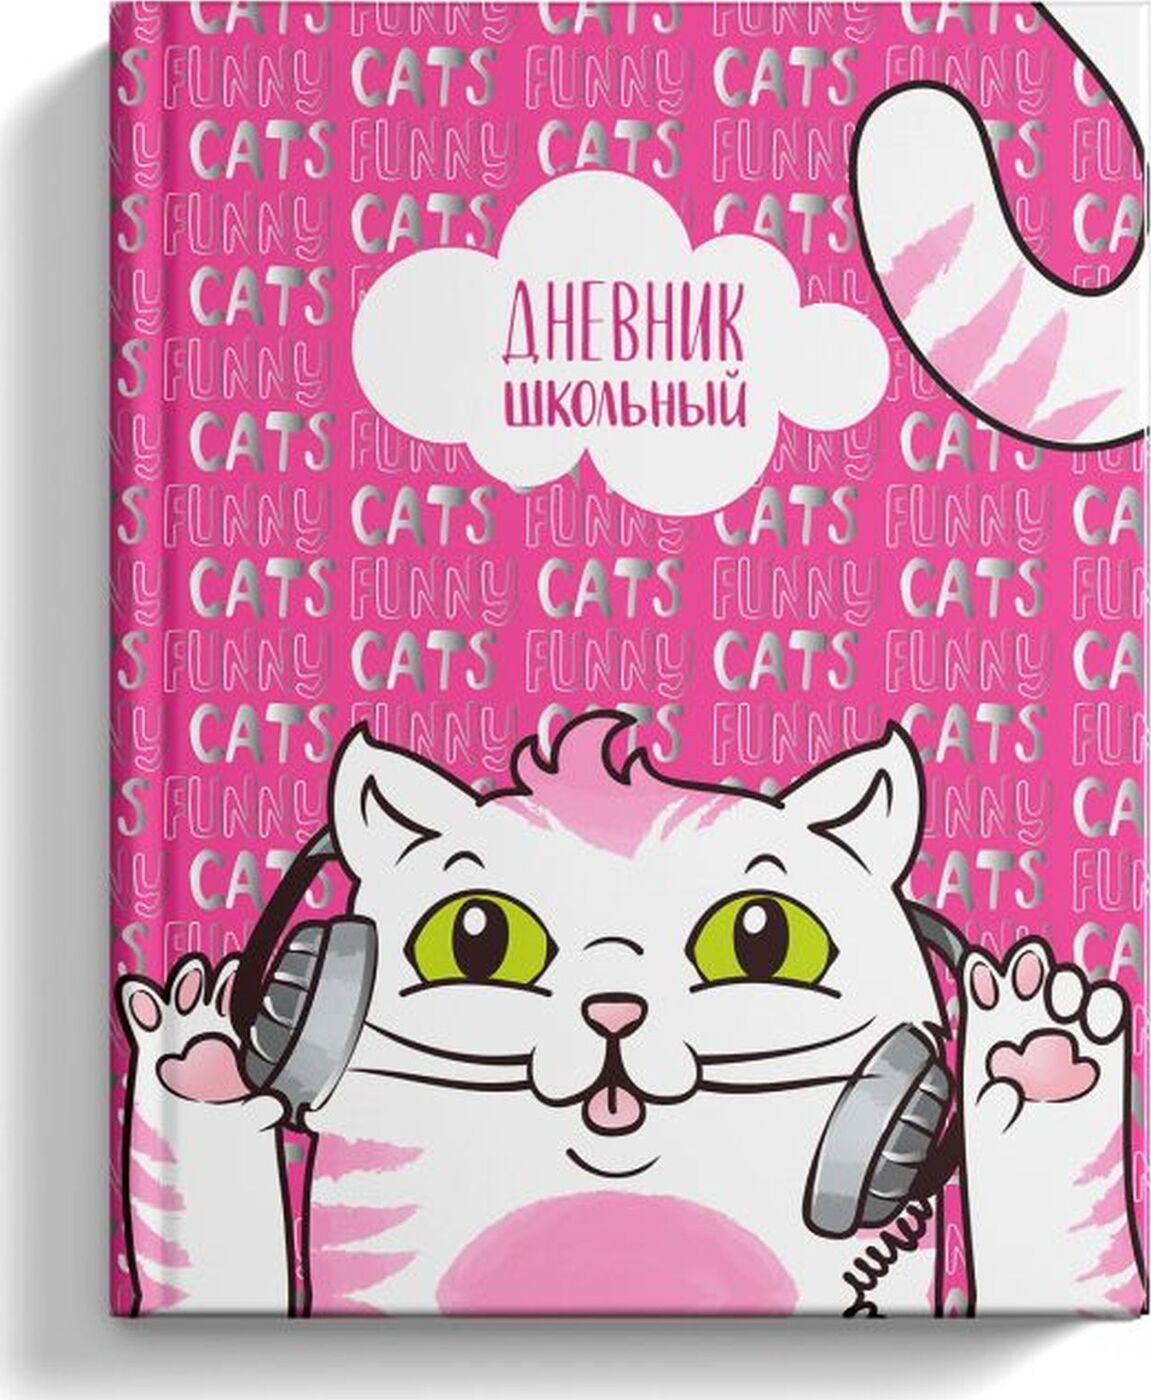 Феникс дневник школьный кот